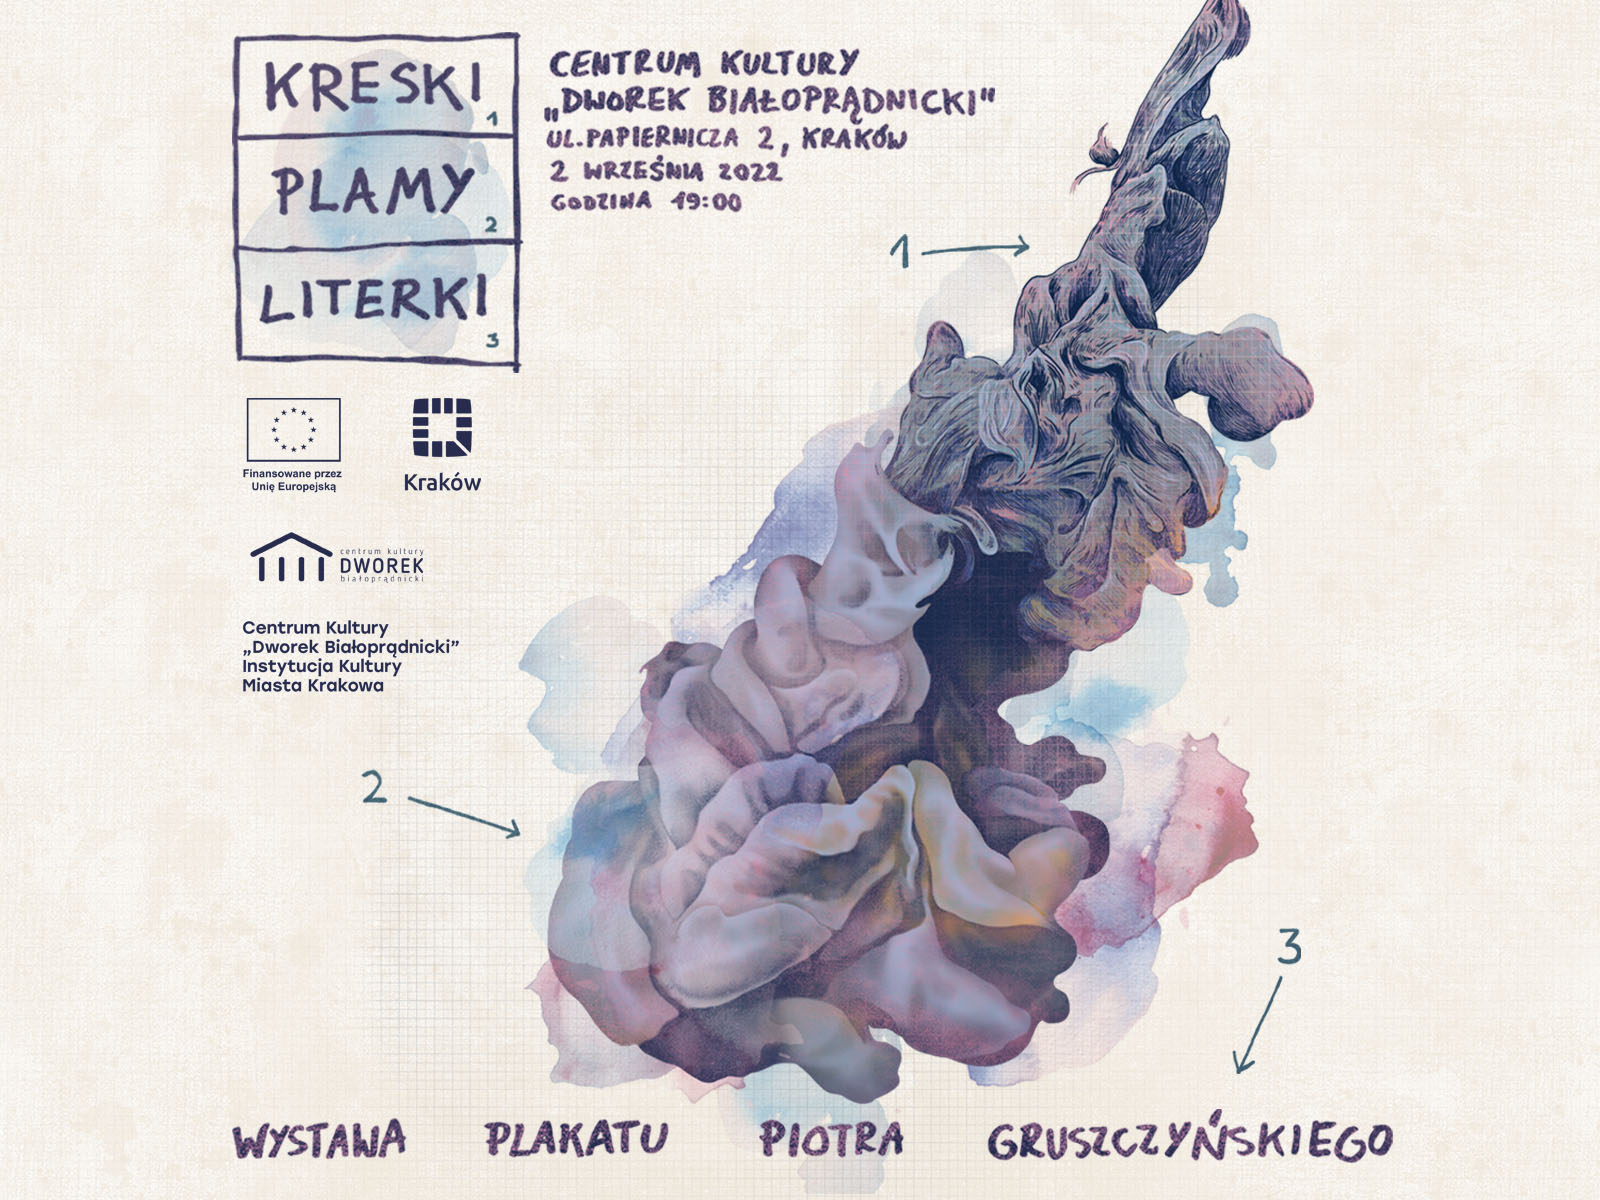 Kreski, plamy i literki | Wystawa plakatu Piotra Gruszczyńskiego